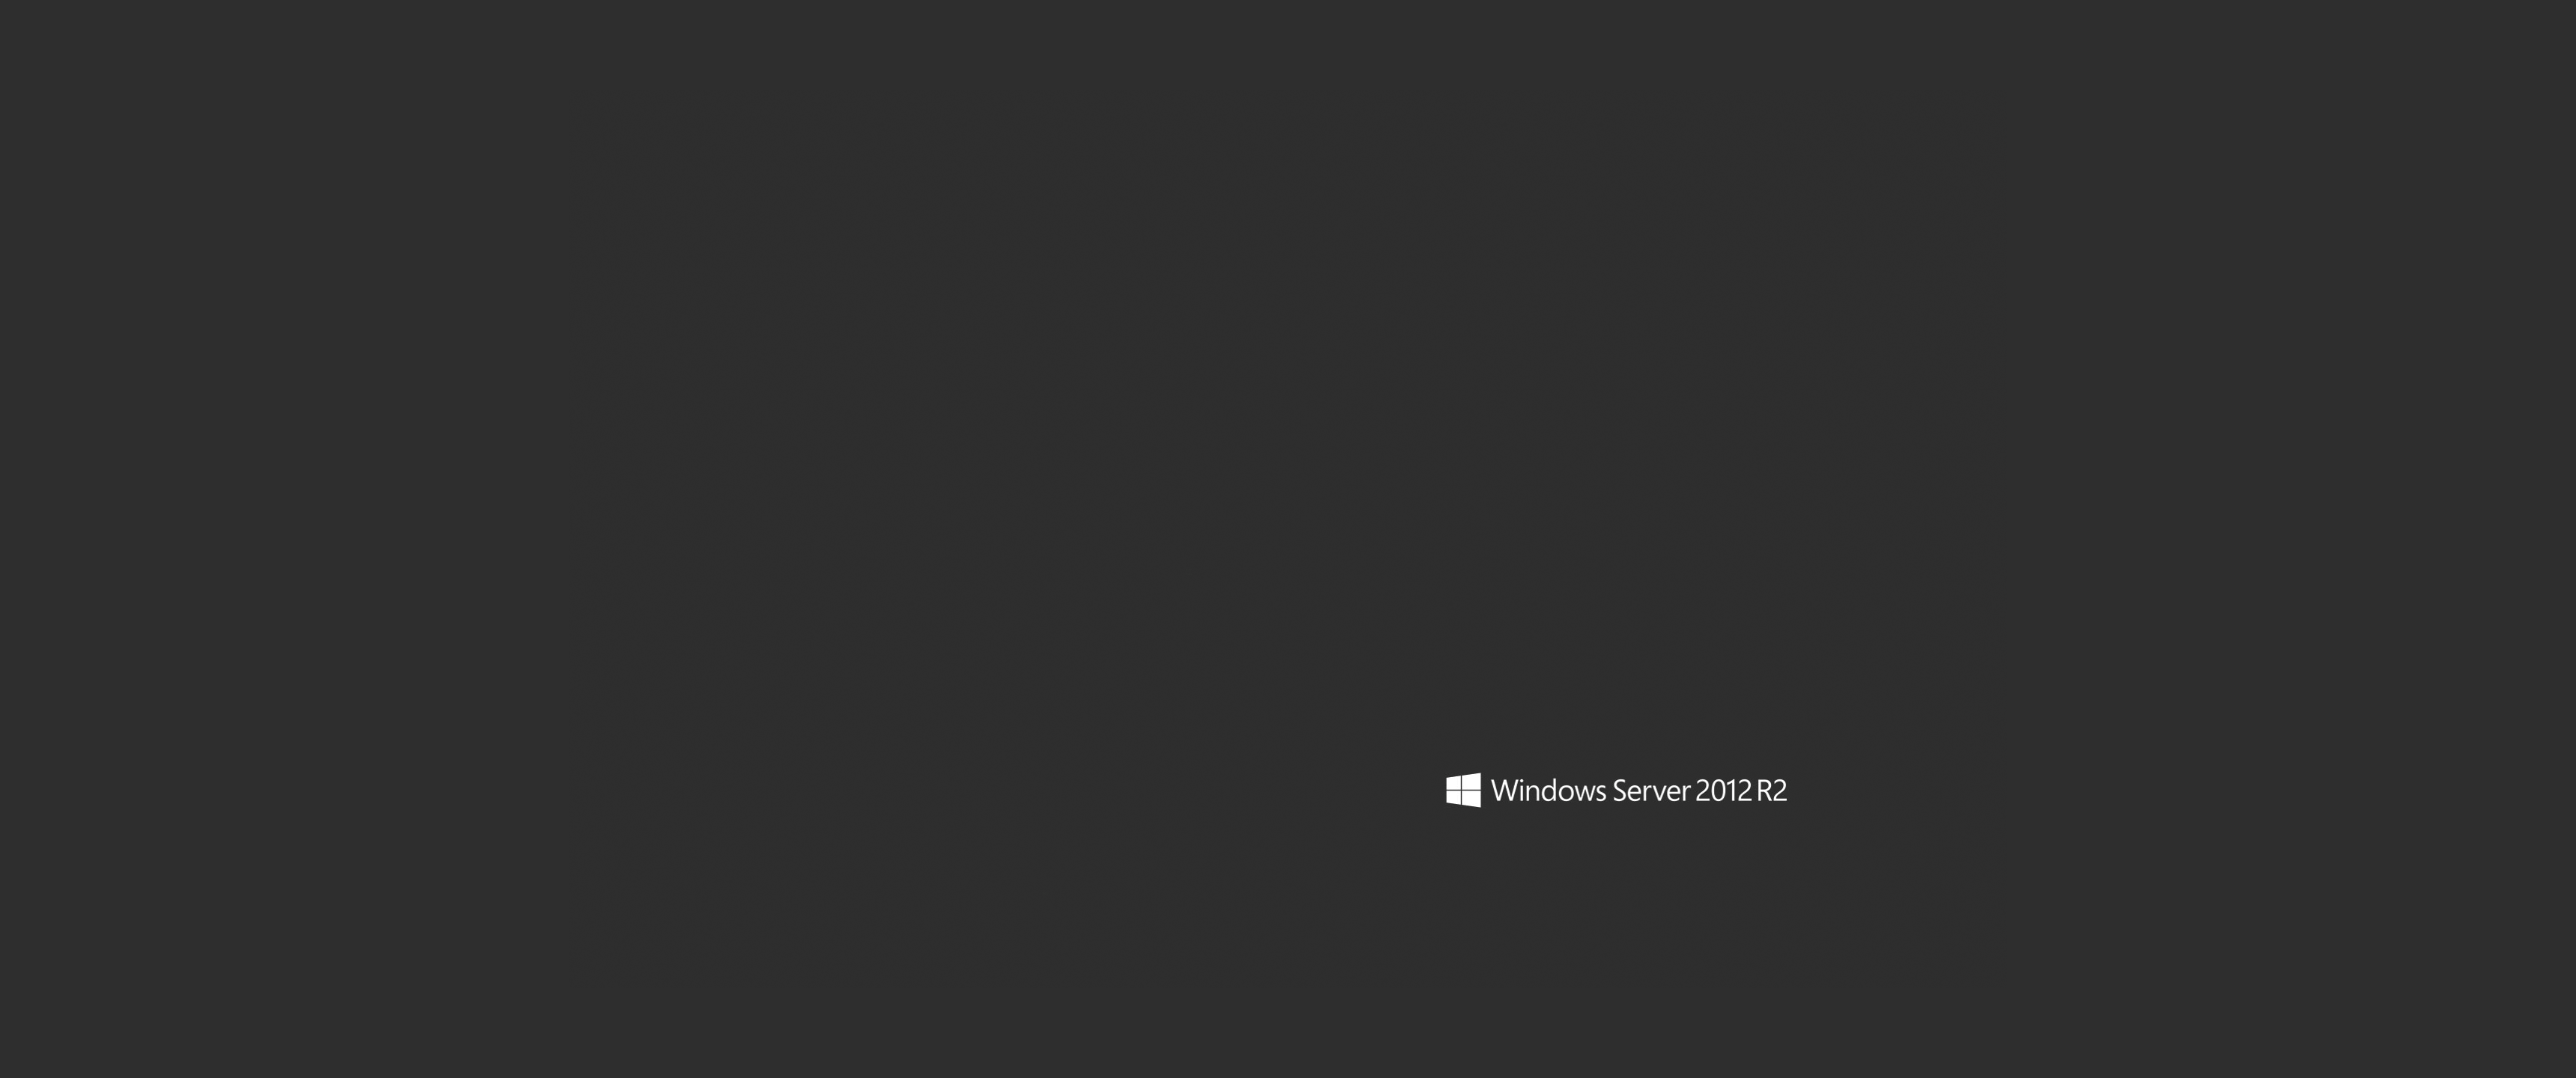 windows server 2012 r2 fond d'écran,noir,texte,marron,police de caractère,ciel